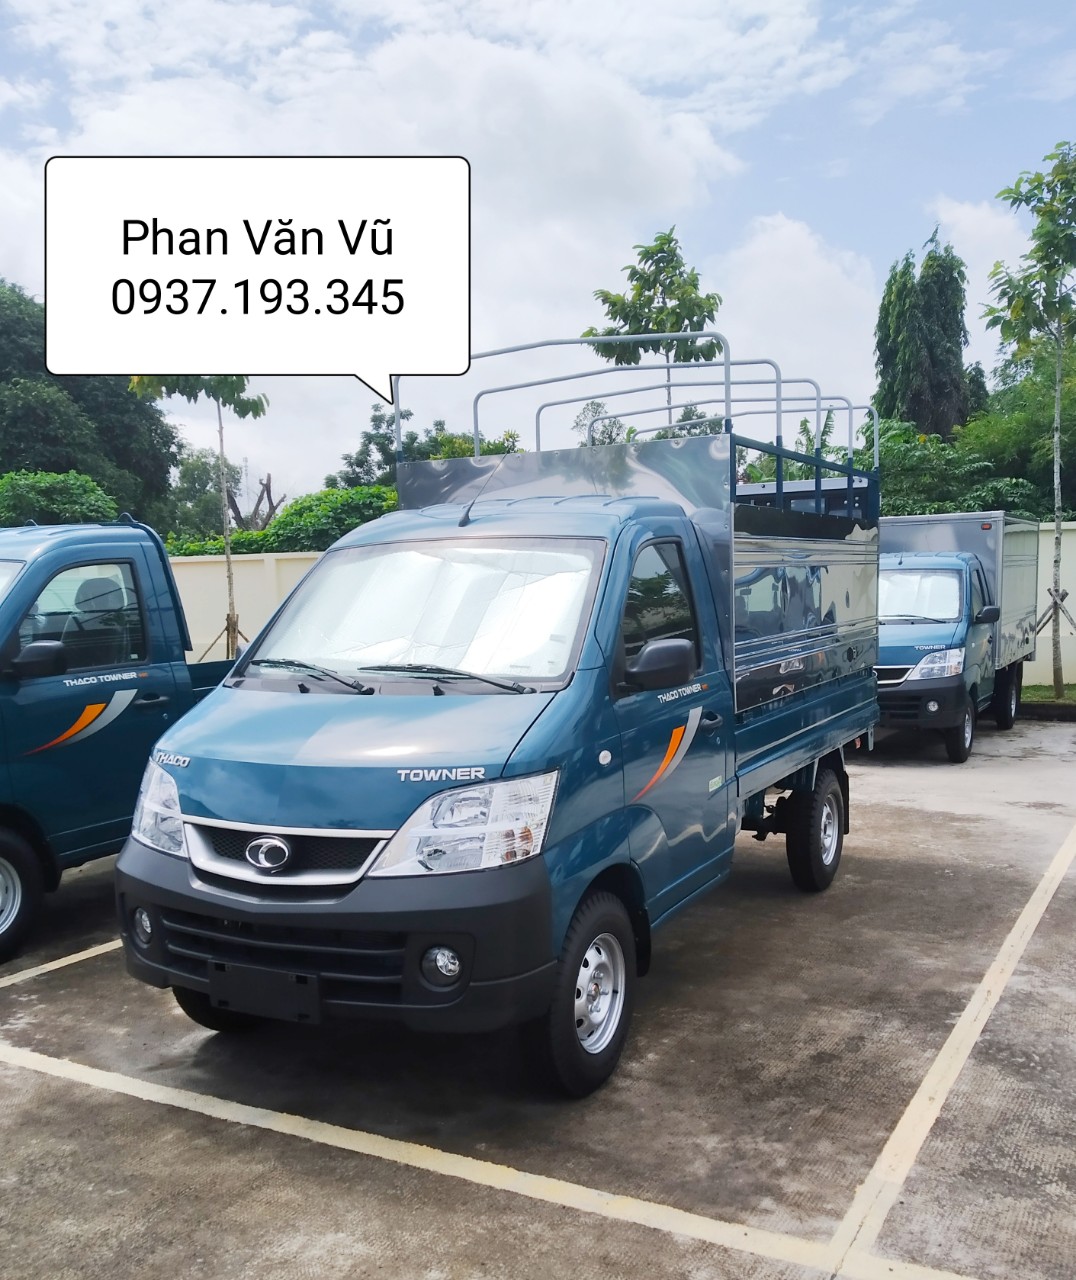 Cần mua bán xe tải Thaco Towner990- 990kg giá tốt, hỗ trợ trả góp Bà Rịa Vũng Tàu-2